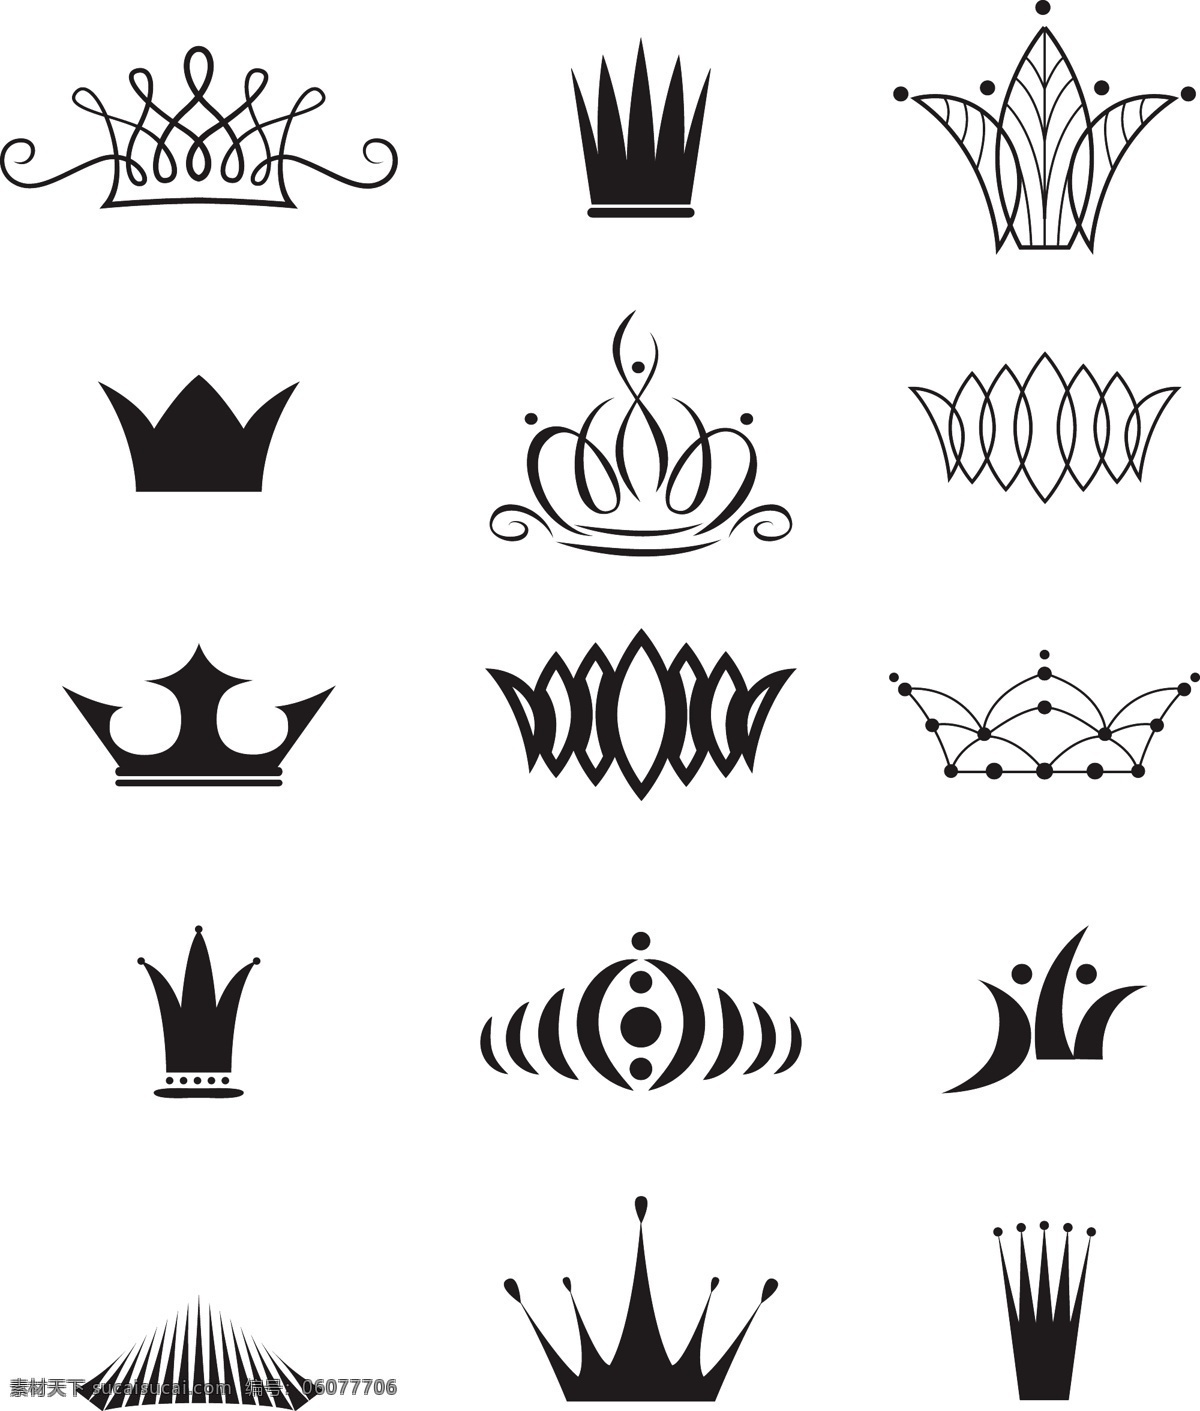 皇冠 欧式皇冠 头盔 权力 皇冠图标 标签 王冠 皇家 皇族 矢量 标志图标 网页小图标 白色